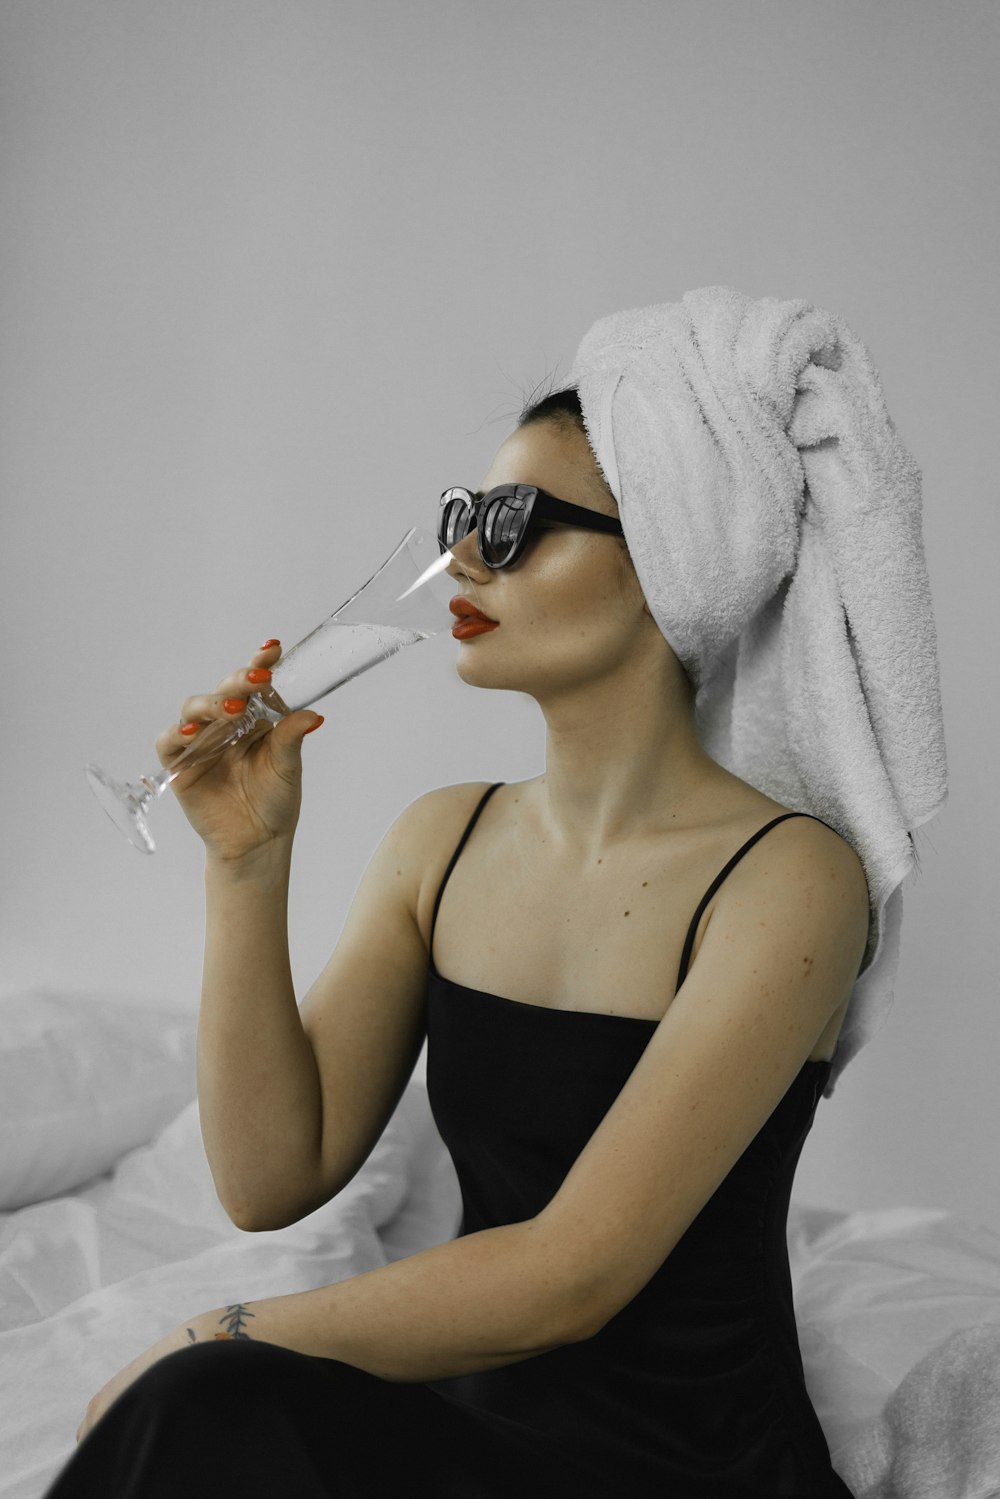 Una mujer con una toalla en la cabeza bebiendo una copa de vino